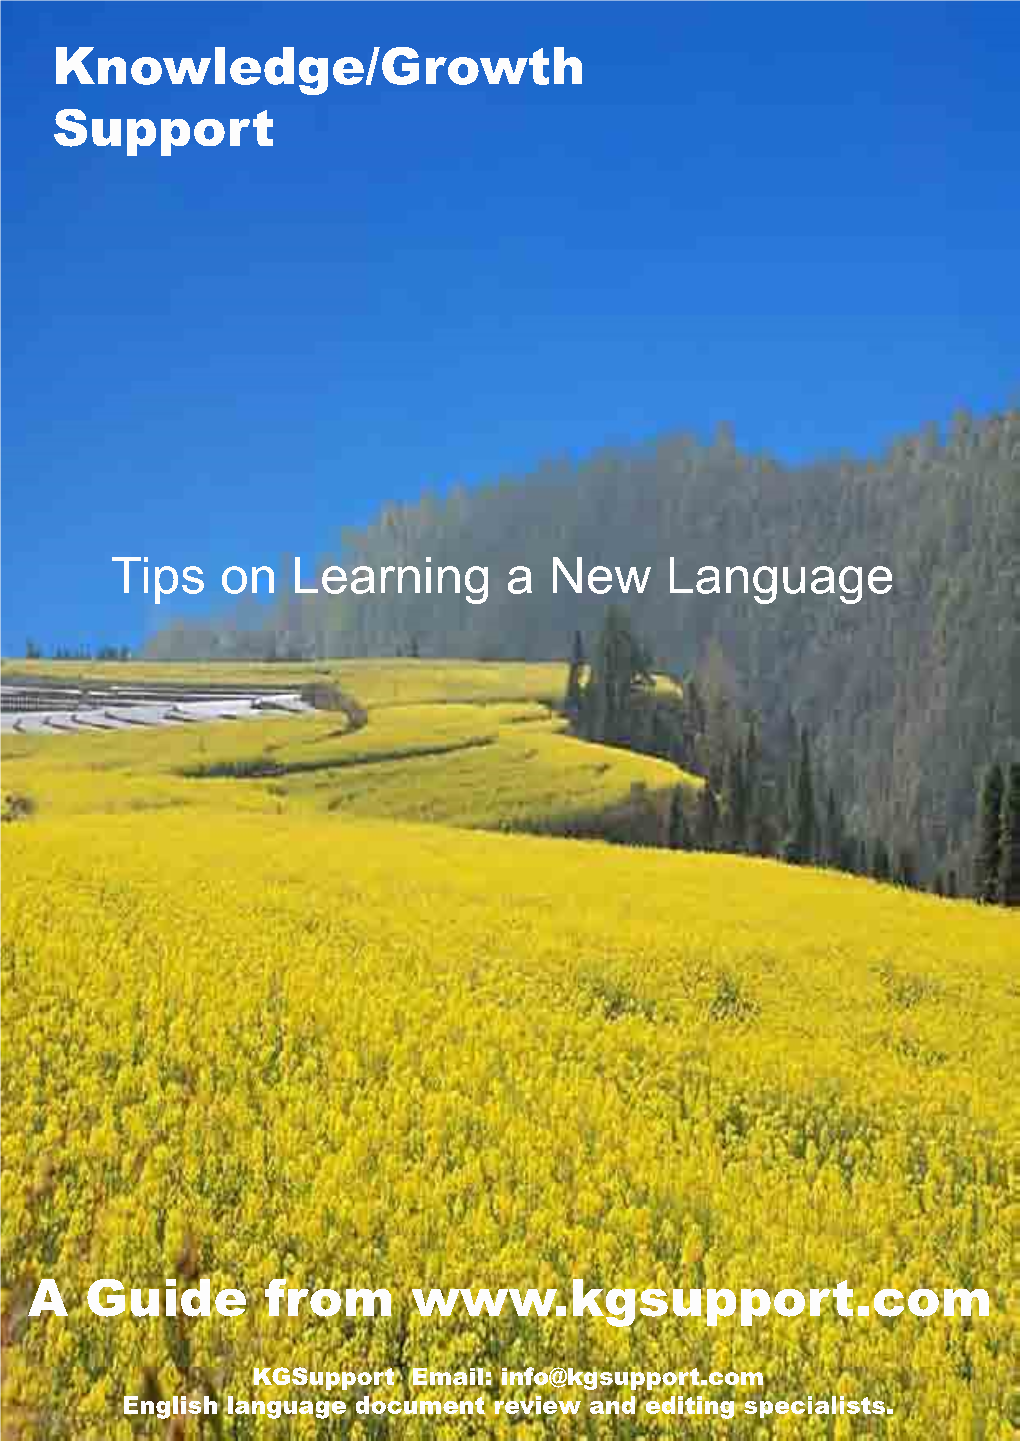 Tips on Learninga New Language